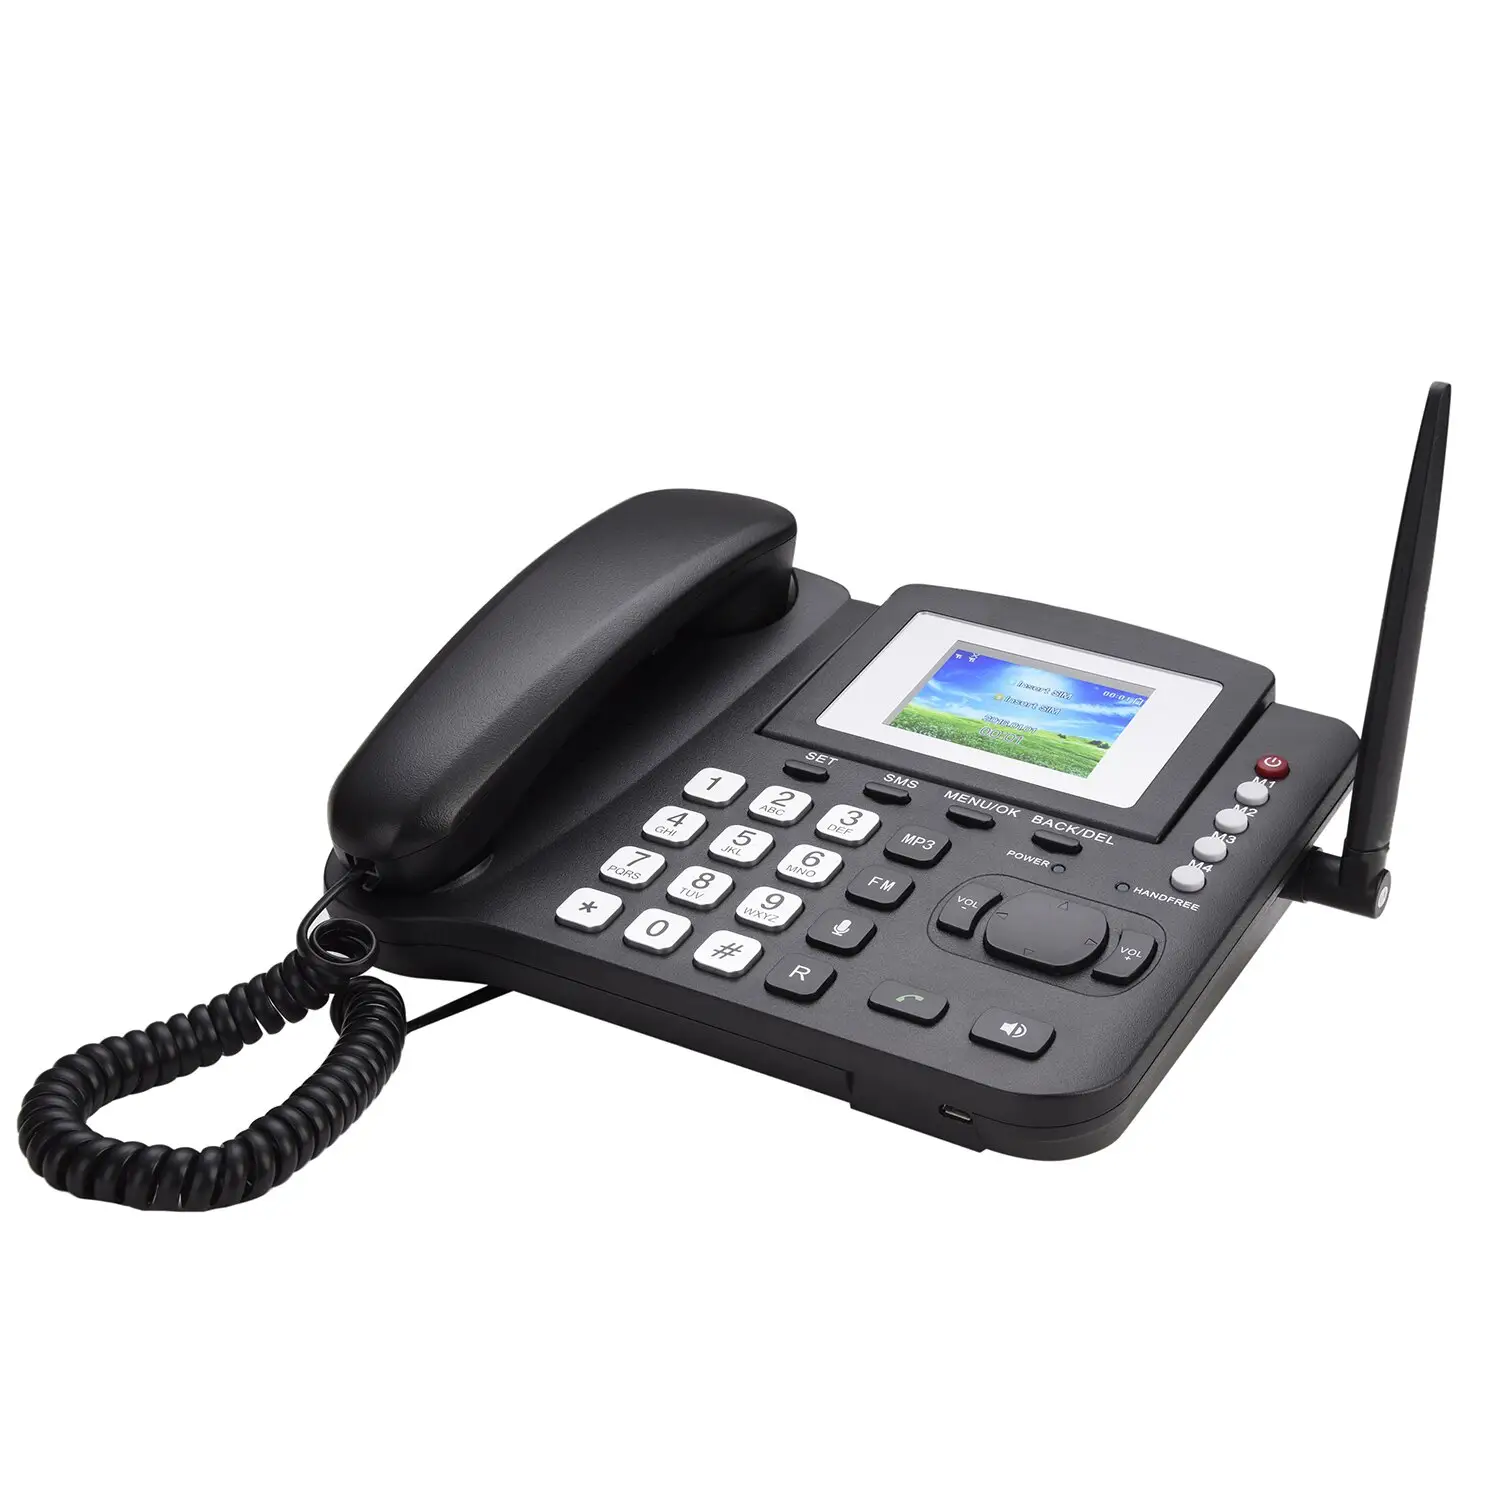 2G GSM 2.8 inç ekran SIM kart telefon FM MP3 kayıt ve arayan kimliği fonksiyonu ev kablosuz masaüstü telefon FWP LS980